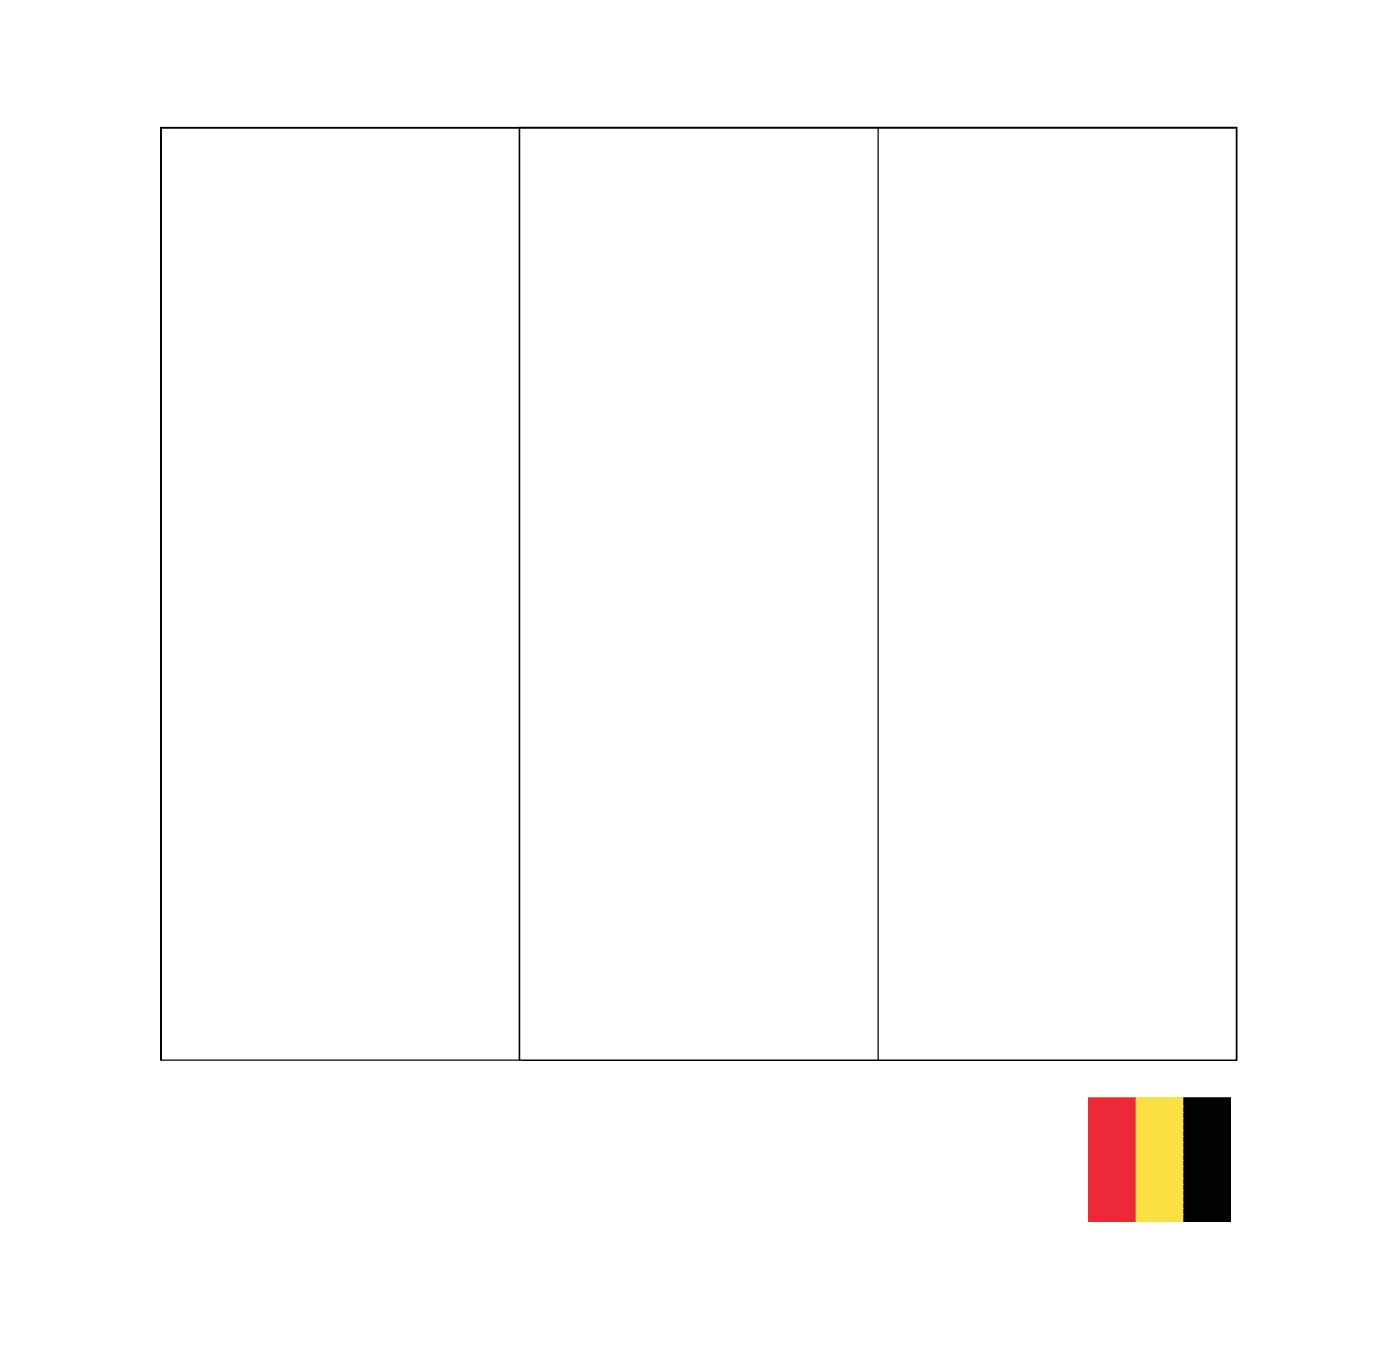  比利时国旗 